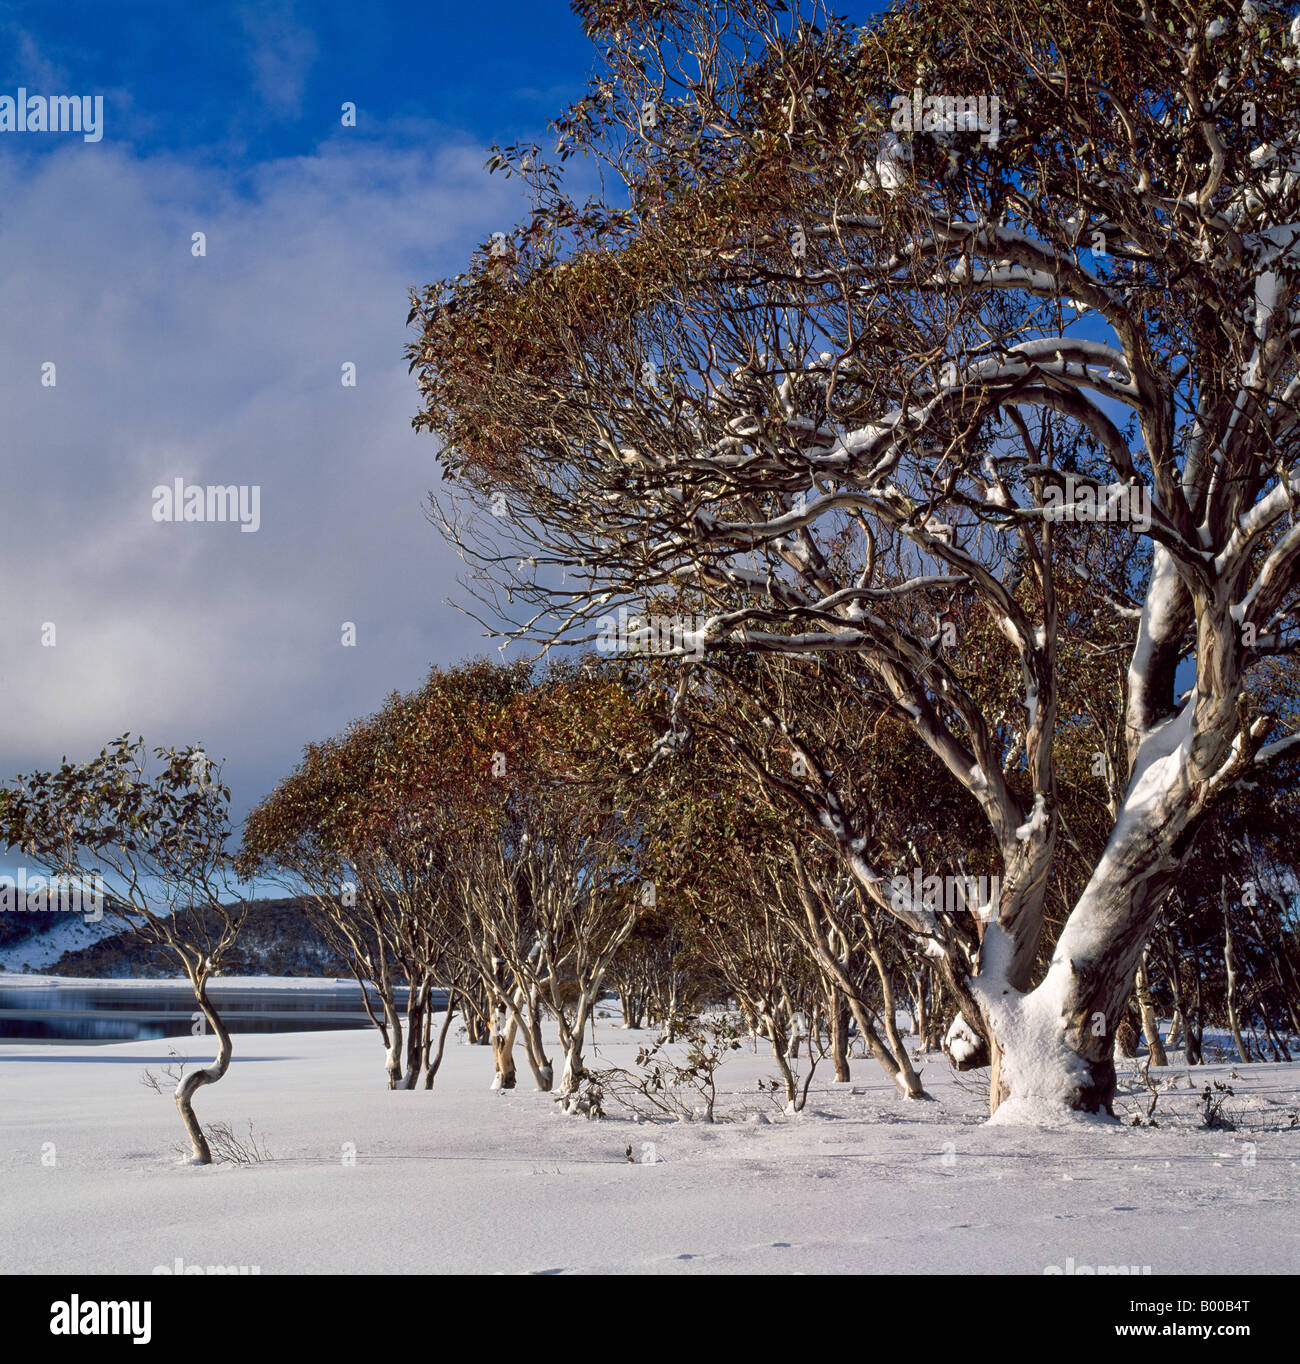 Gomme da neve in inverno le montagne nevose Kosciuszko Parco Nazionale del Nuovo Galles del Sud Australia Foto Stock